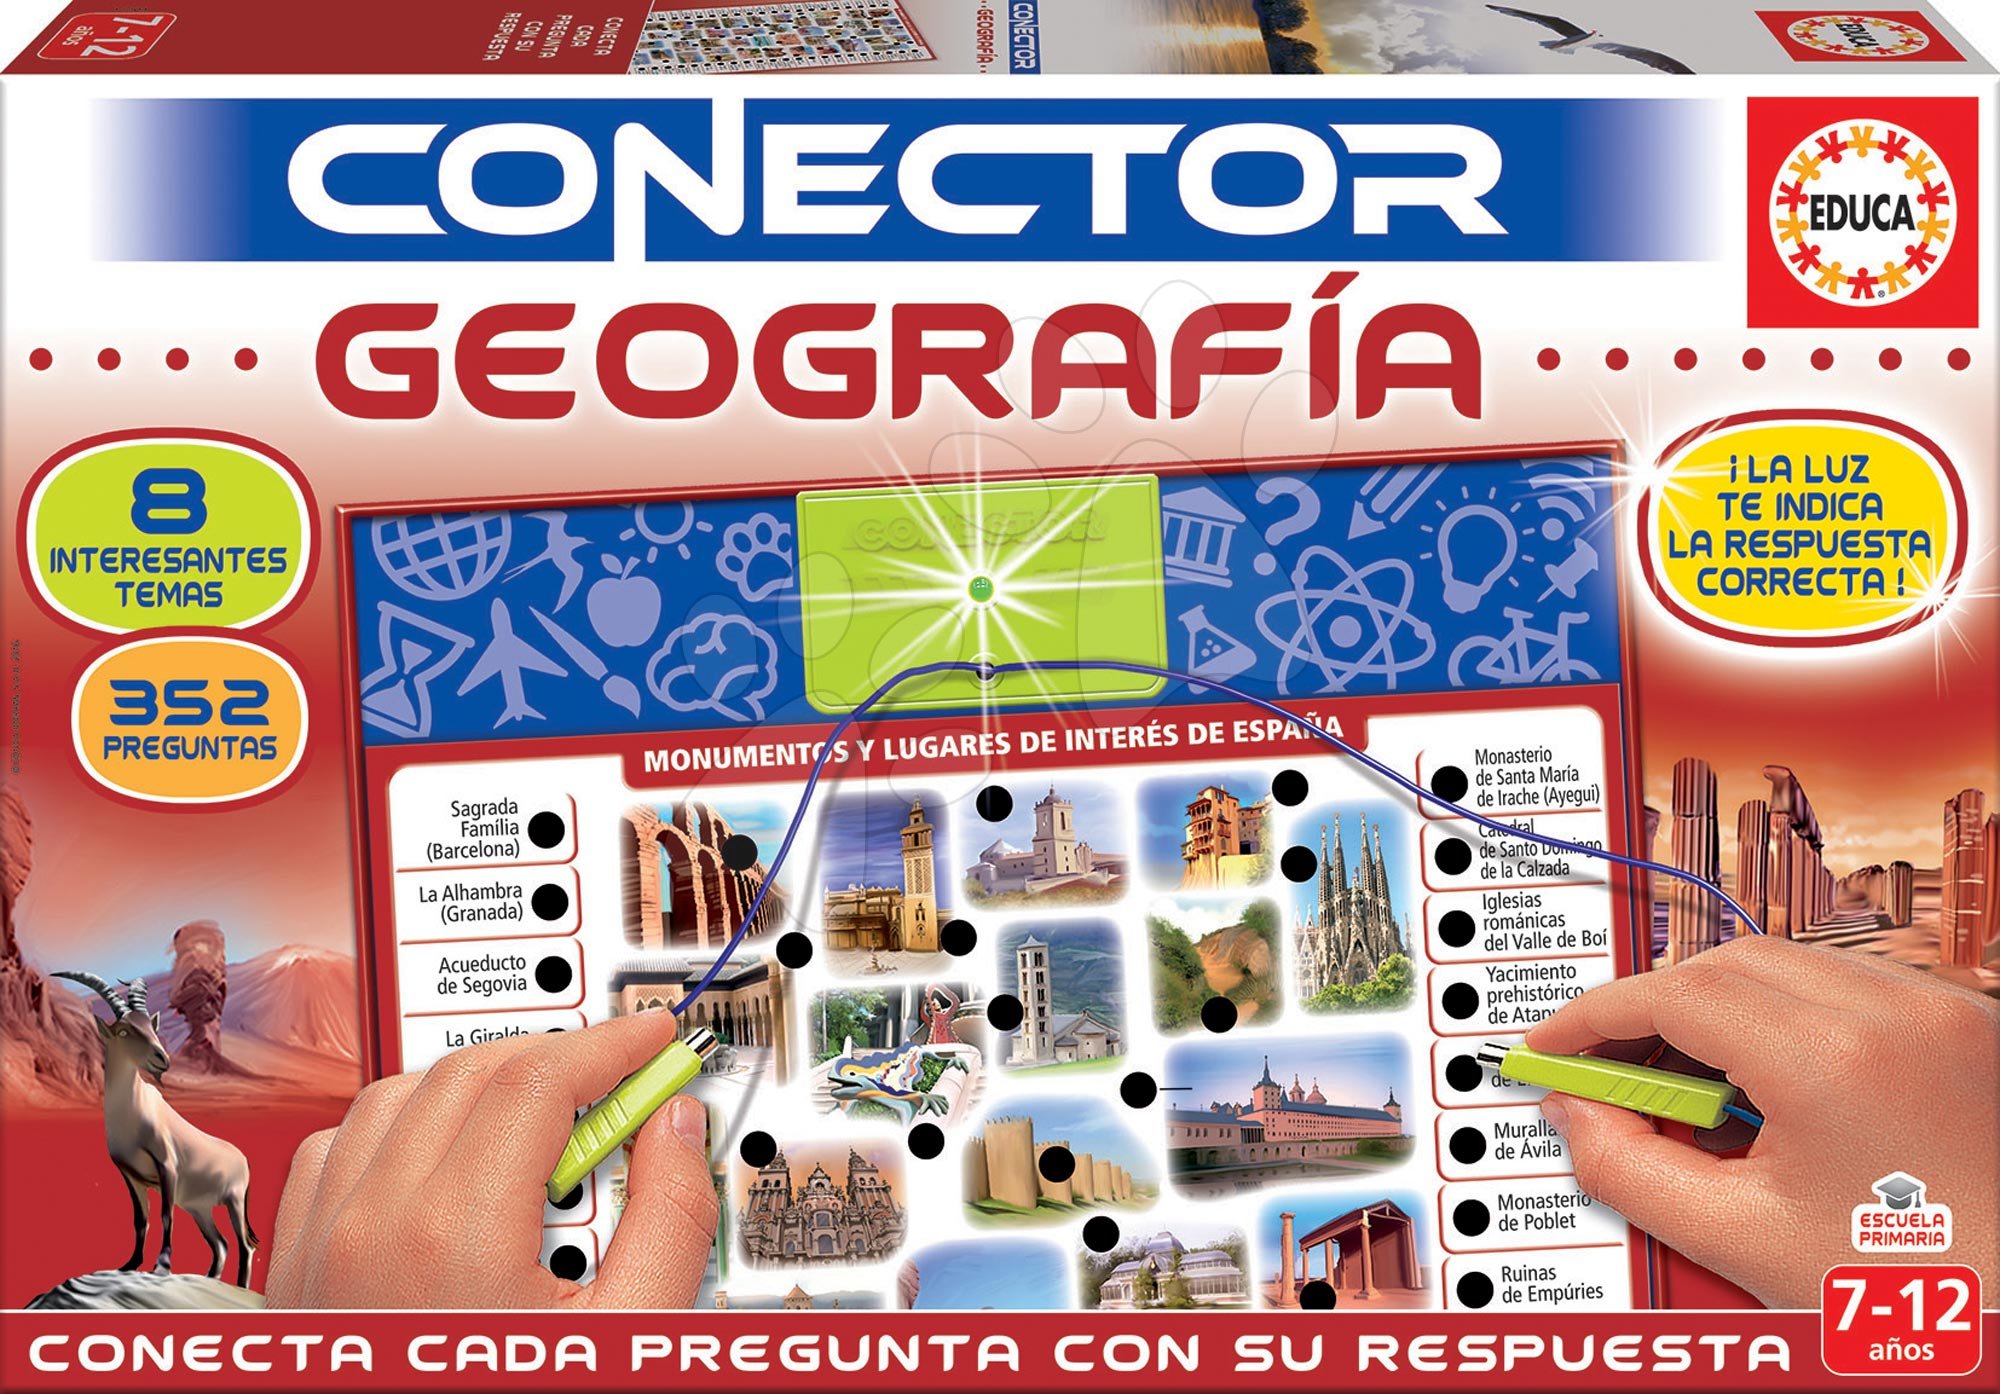 Társasjáték Conector földrajz Geografia Educa spanyol nyelvű 352 kérdés 7-12 éves korosztálynak